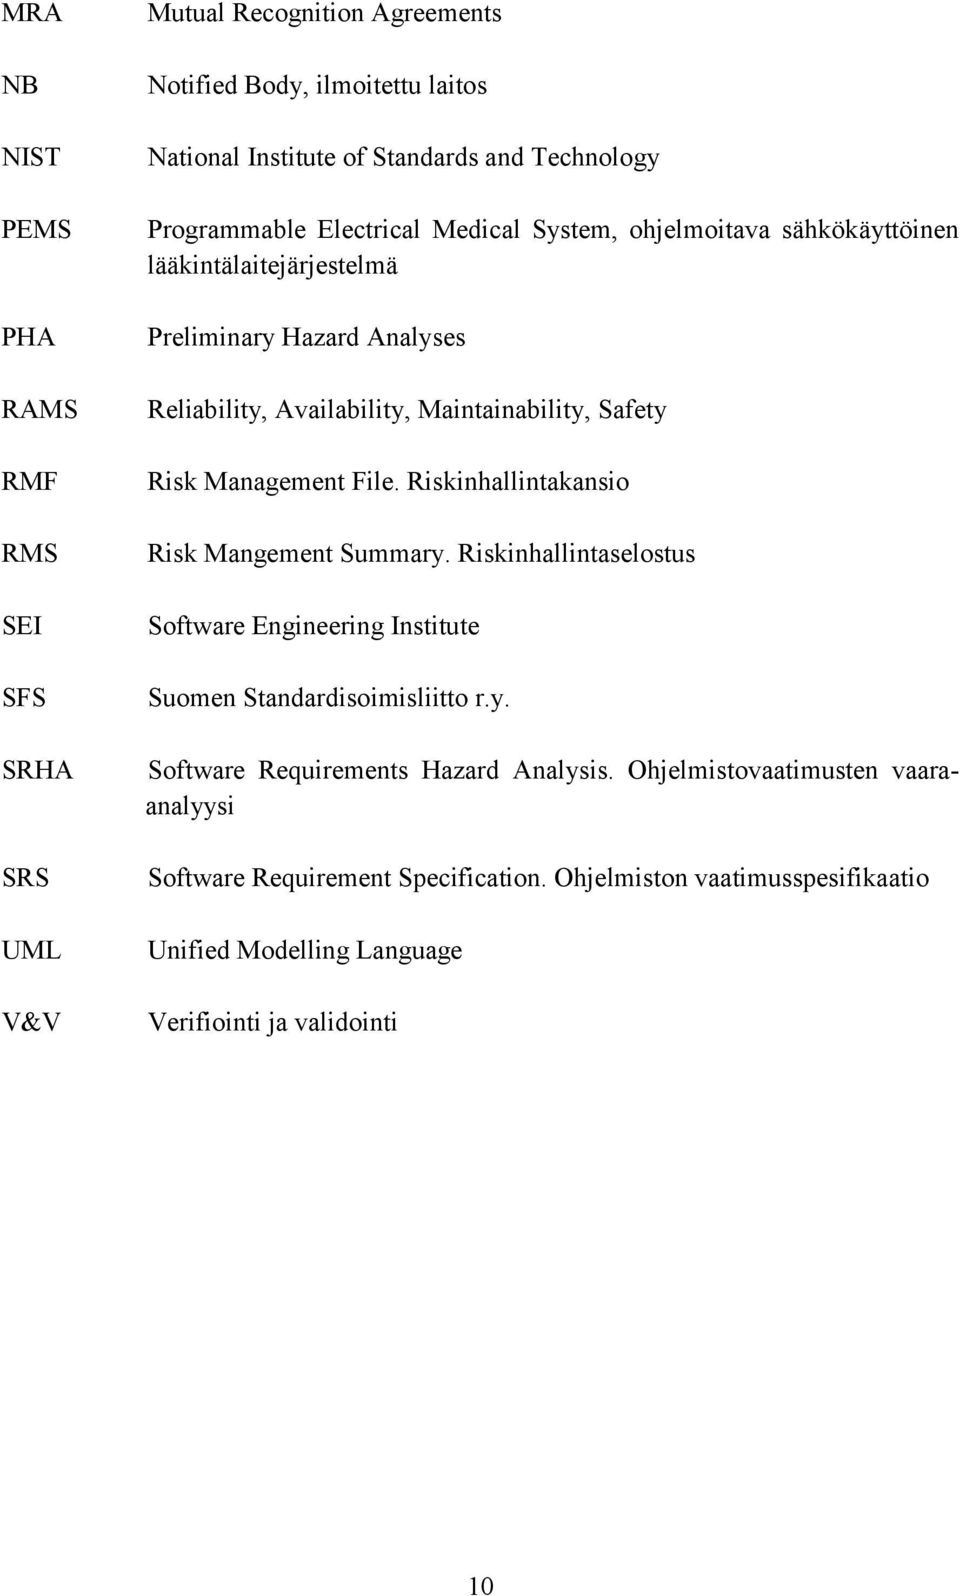 Risk Management File. Riskinhallintakansio Risk Mangement Summary. Riskinhallintaselostus Software Engineering Institute Suomen Standardisoimisliitto r.y. Software Requirements Hazard Analysis.